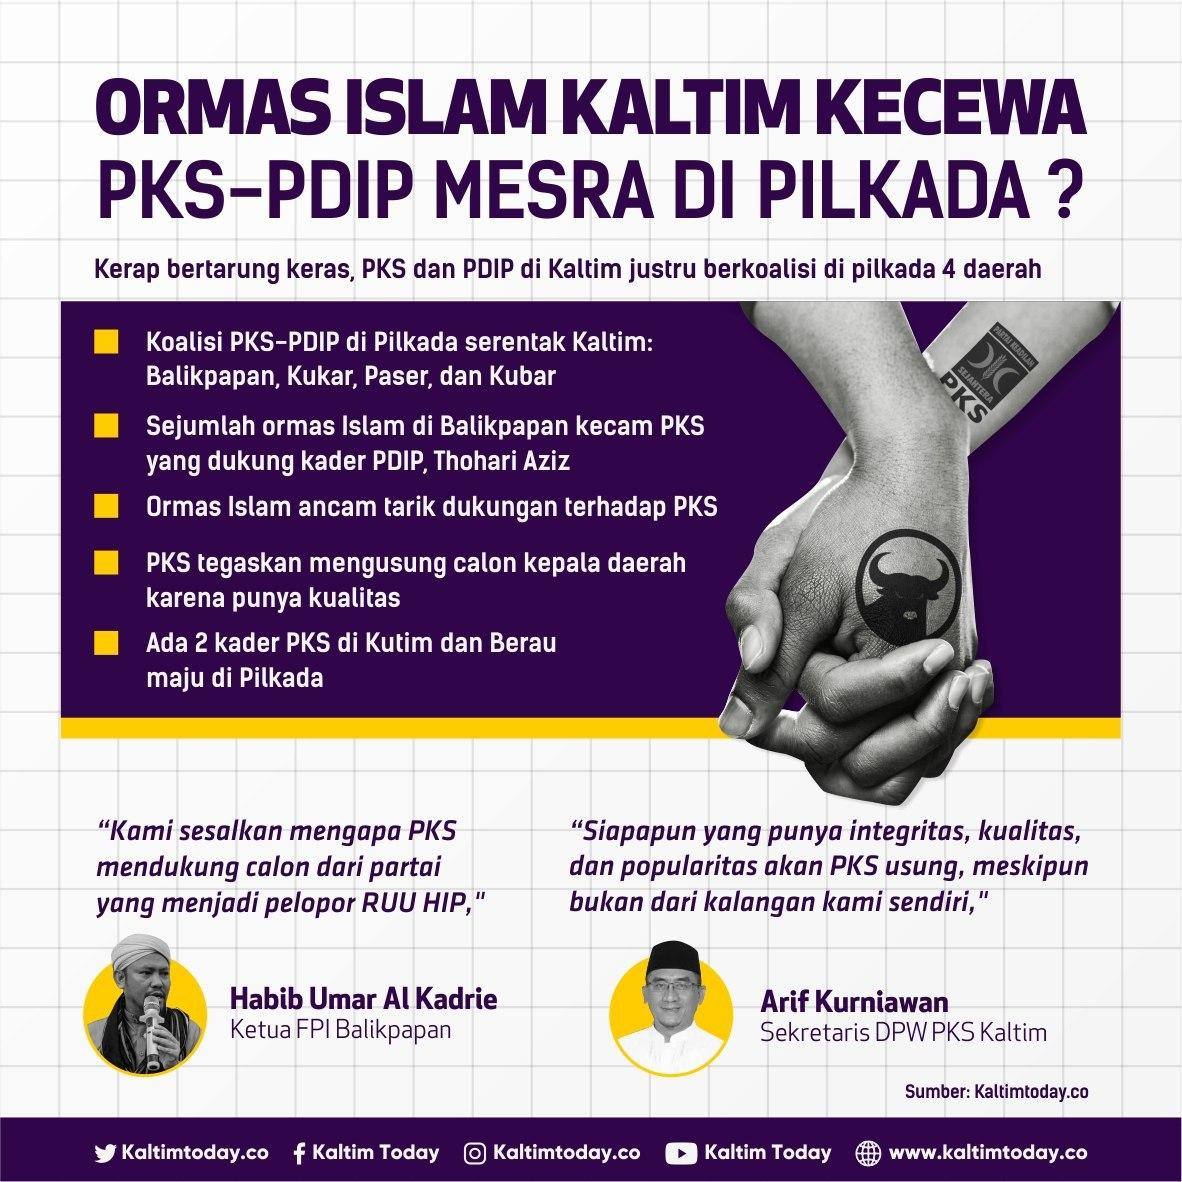 Ormas Islam Kaltim Kecewa, PKS-PDIP Mesra di Pilkada?